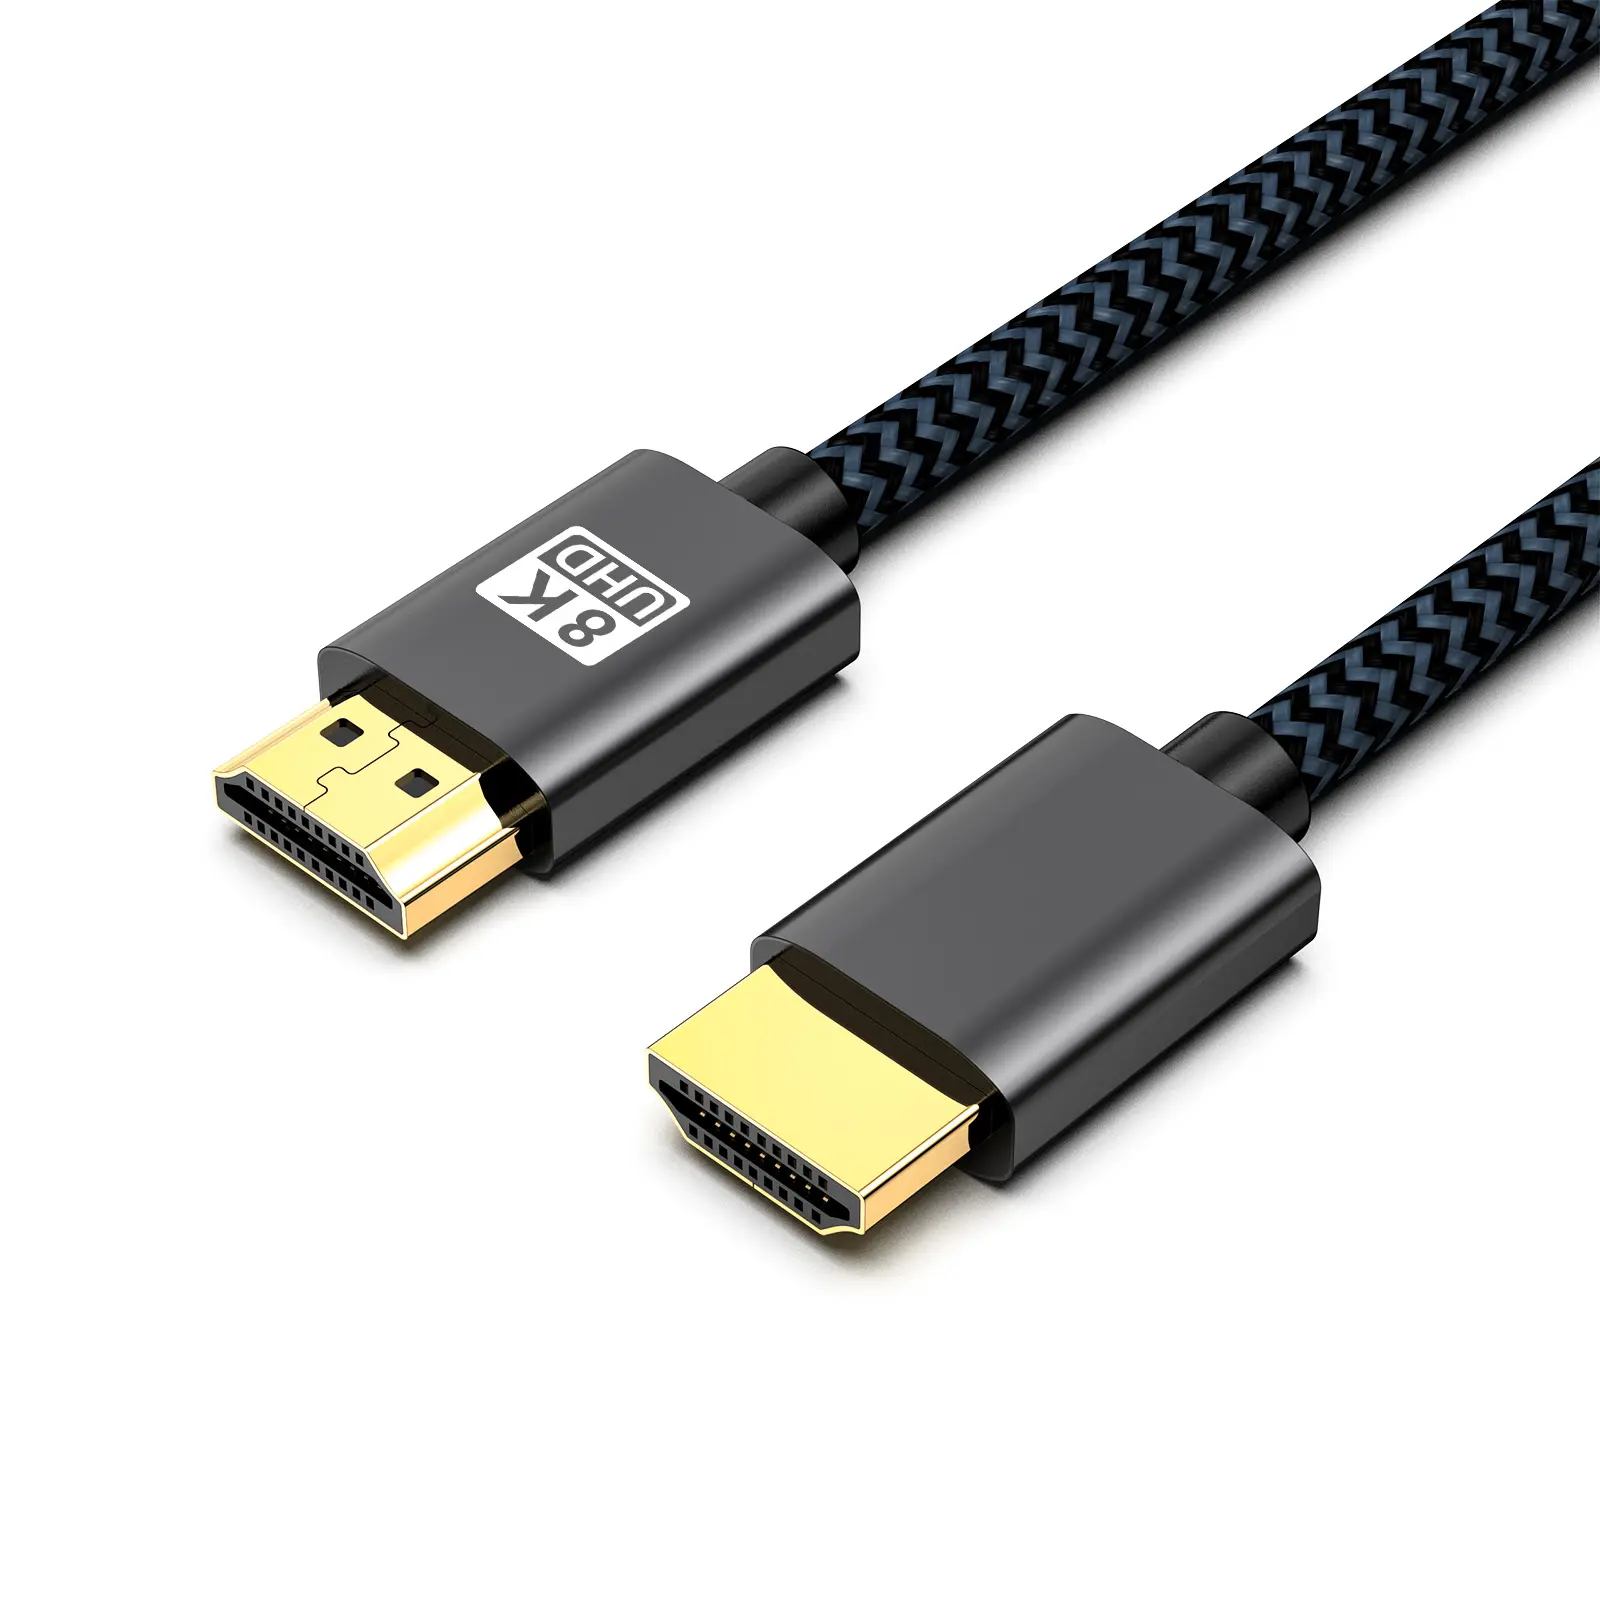 Kabel HDMI 2.1 kualitas tinggi, kabel HDMI 8K 60Hz 4K 120Hz 3D 48Gbps 1M 1.5M 2M 3M 5M, kabel HDMI logo yang dapat disesuaikan